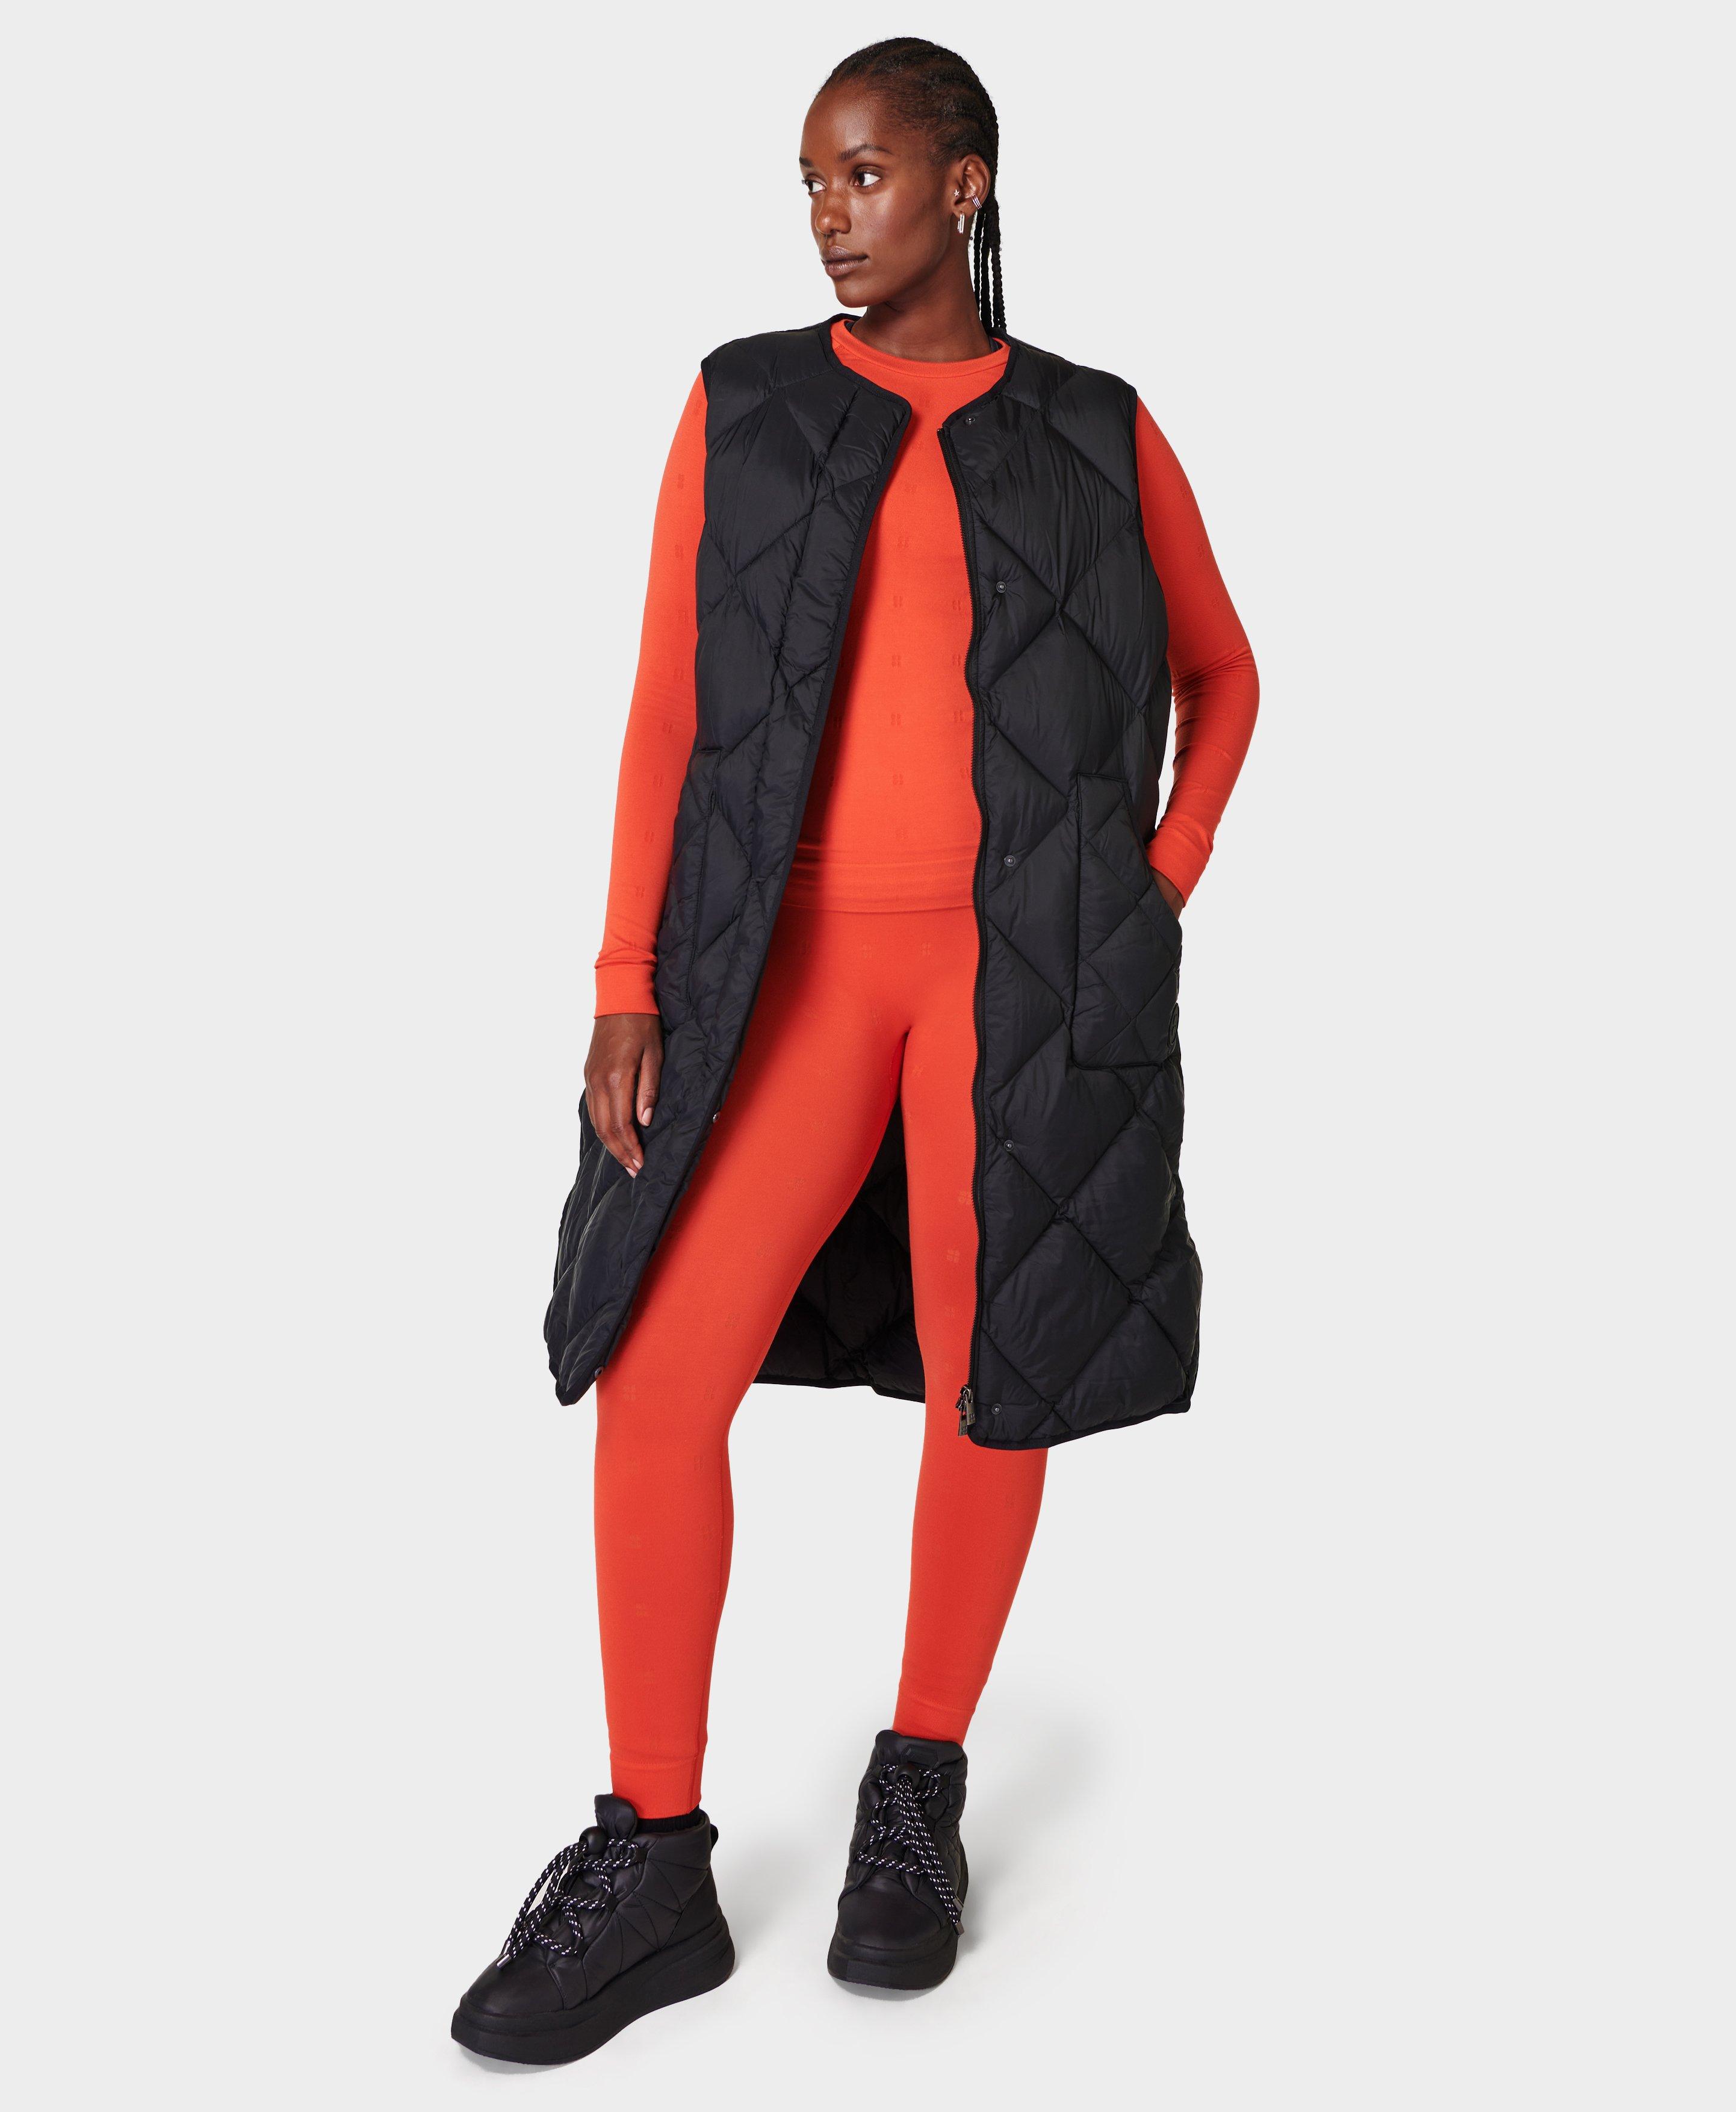 Modal Logo Base Layer Legging - Firebird, Women's Ski Clothes